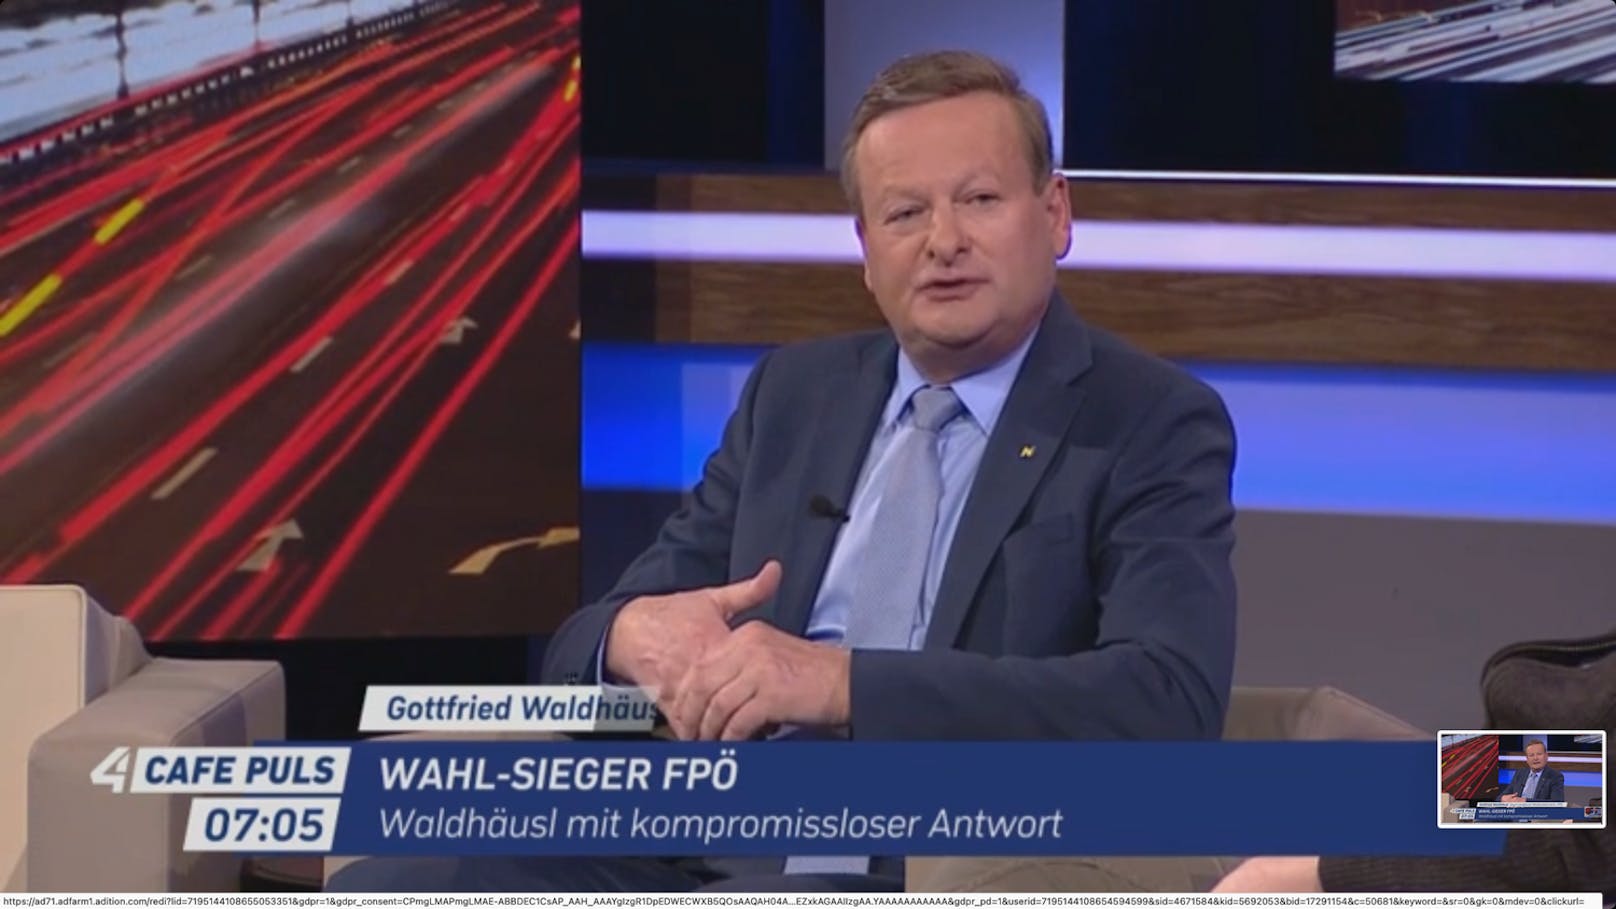 NÖ-Landesrat Gottfried Waldhäusl (FPÖ) sorgt mit seiner Aussage auf Puls 24 für Aufregung.